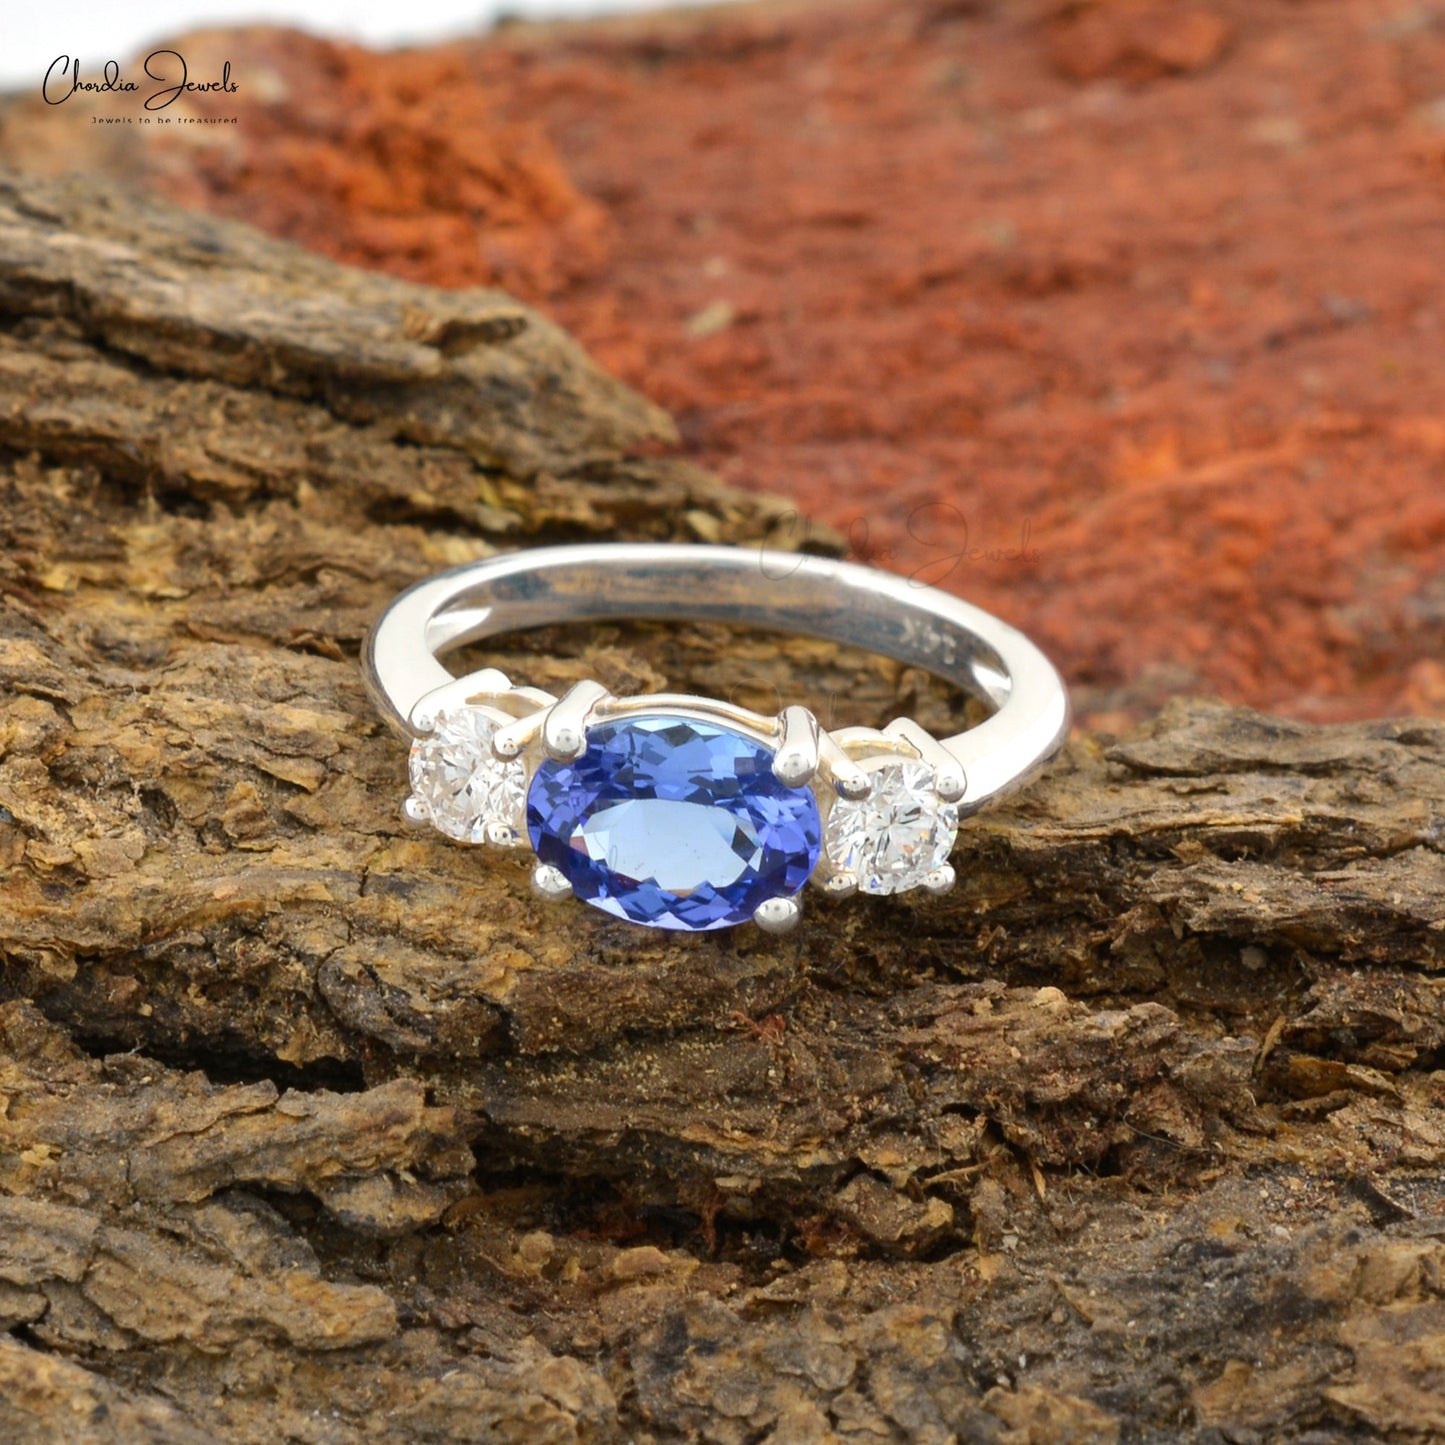 tanzanite gemstone ring